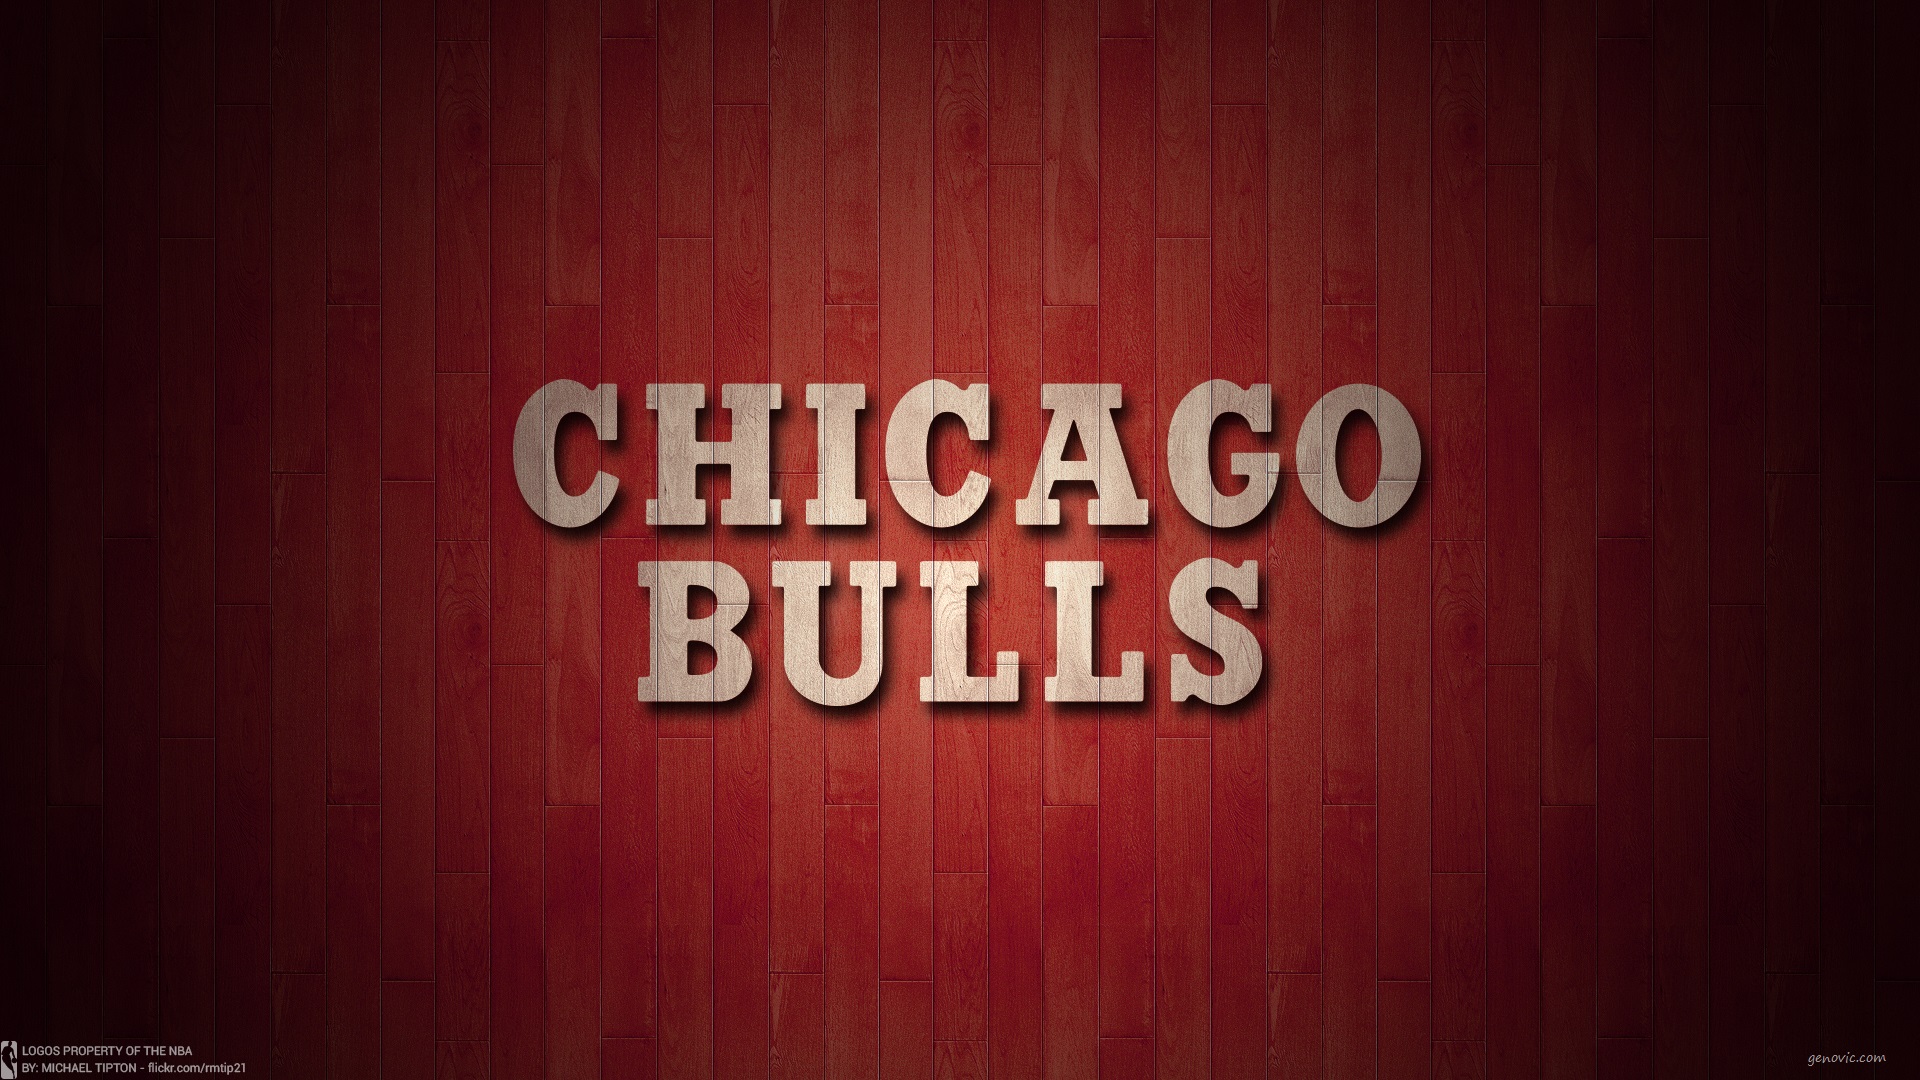 Chicago Bulls Wallpaper Top C8Y » WALLPAPERUN.COM